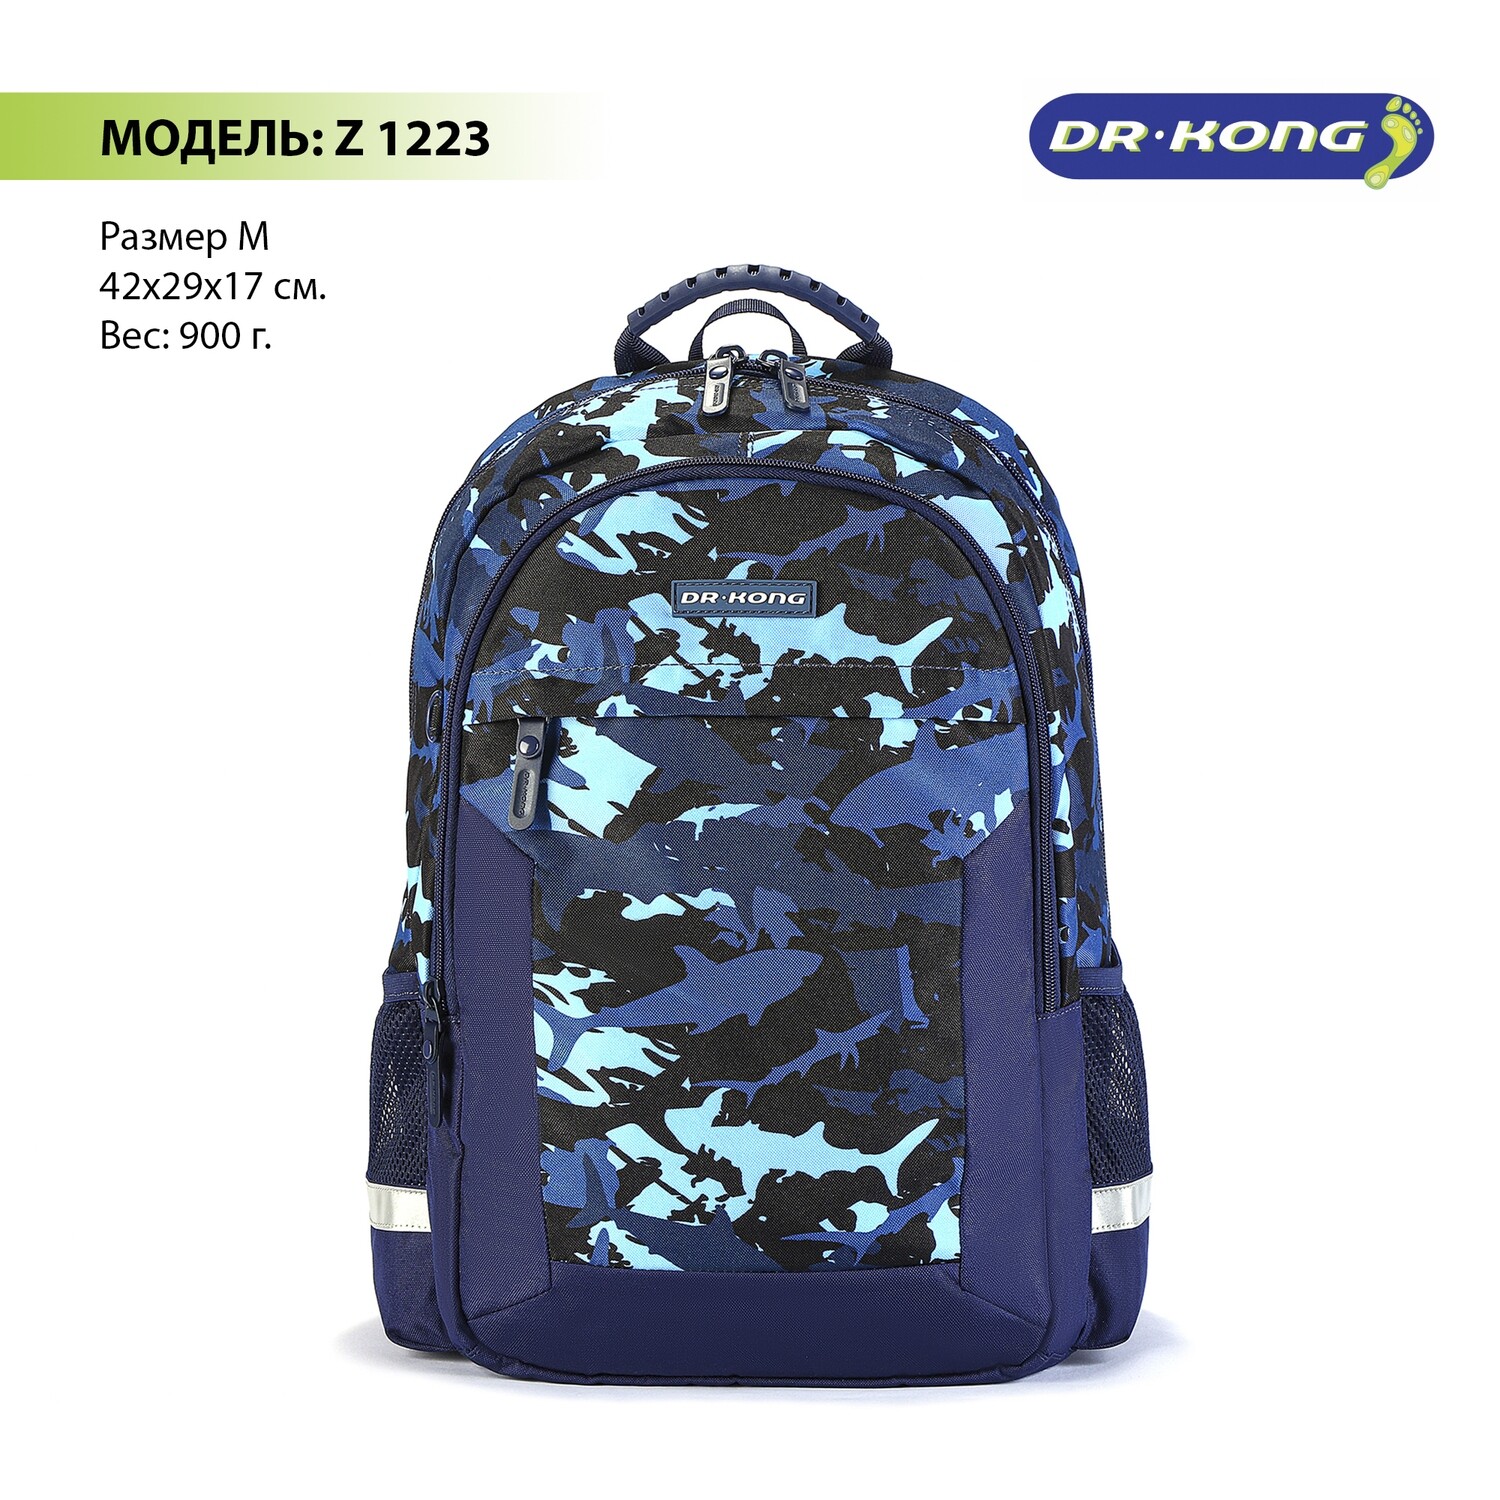 Школьный рюкзак DR.KONG Z 1223 для мальчиков на рост 130-150 см